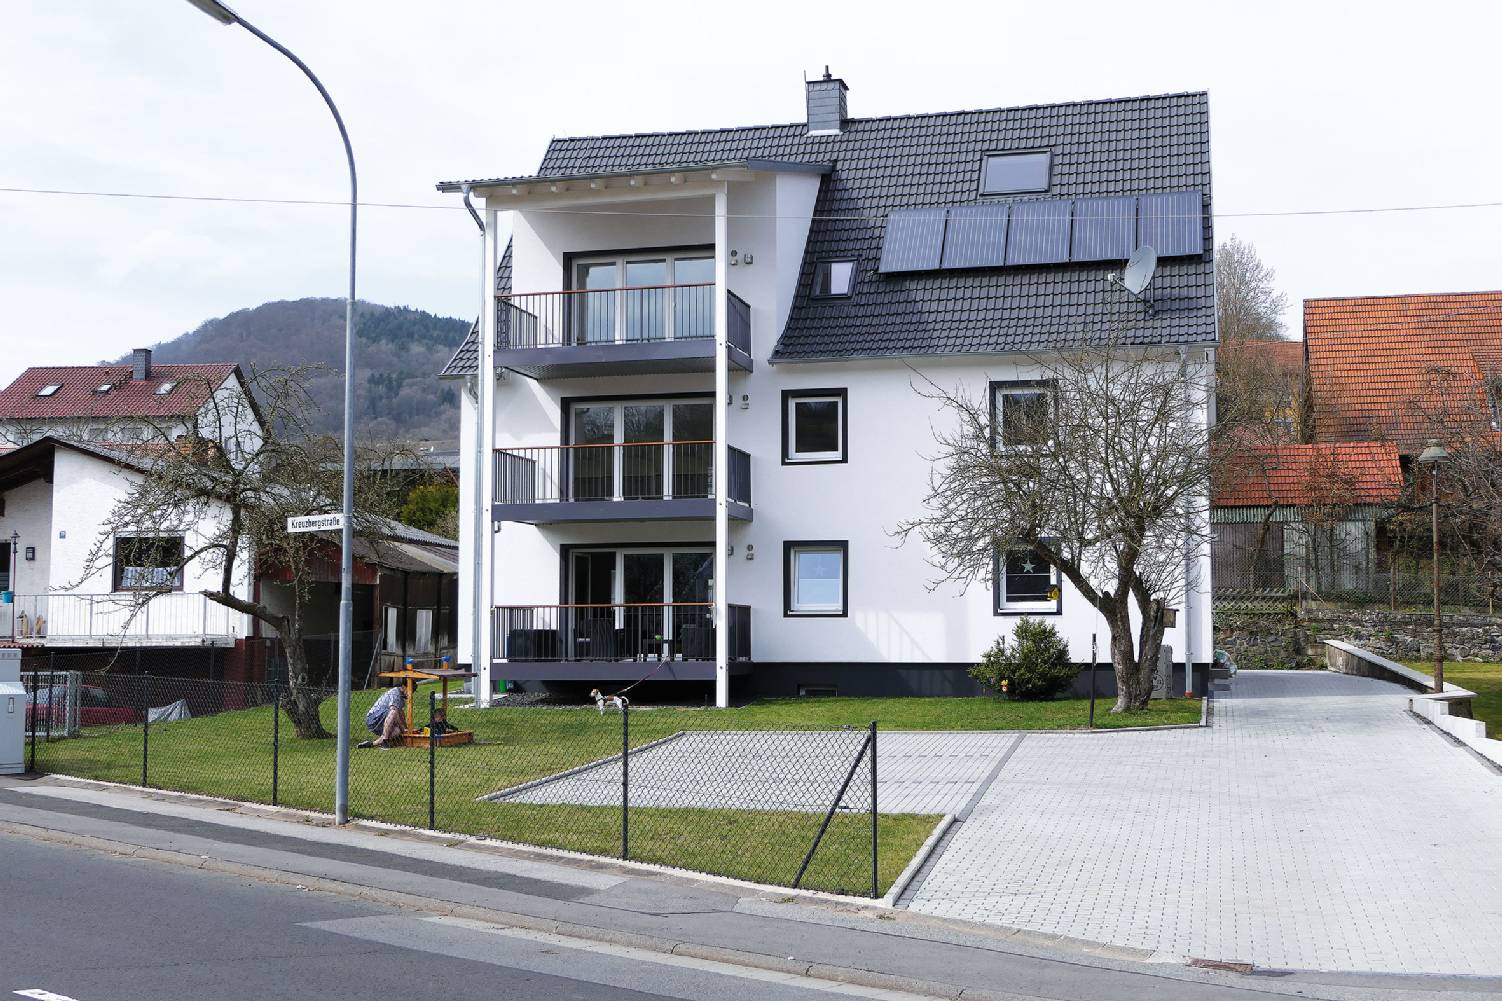 Komplettumbauten und andere Arbeiten rund um Ihre Immobilie bietet Ihnen die HEST Immobilien GmbH in Oberstreu